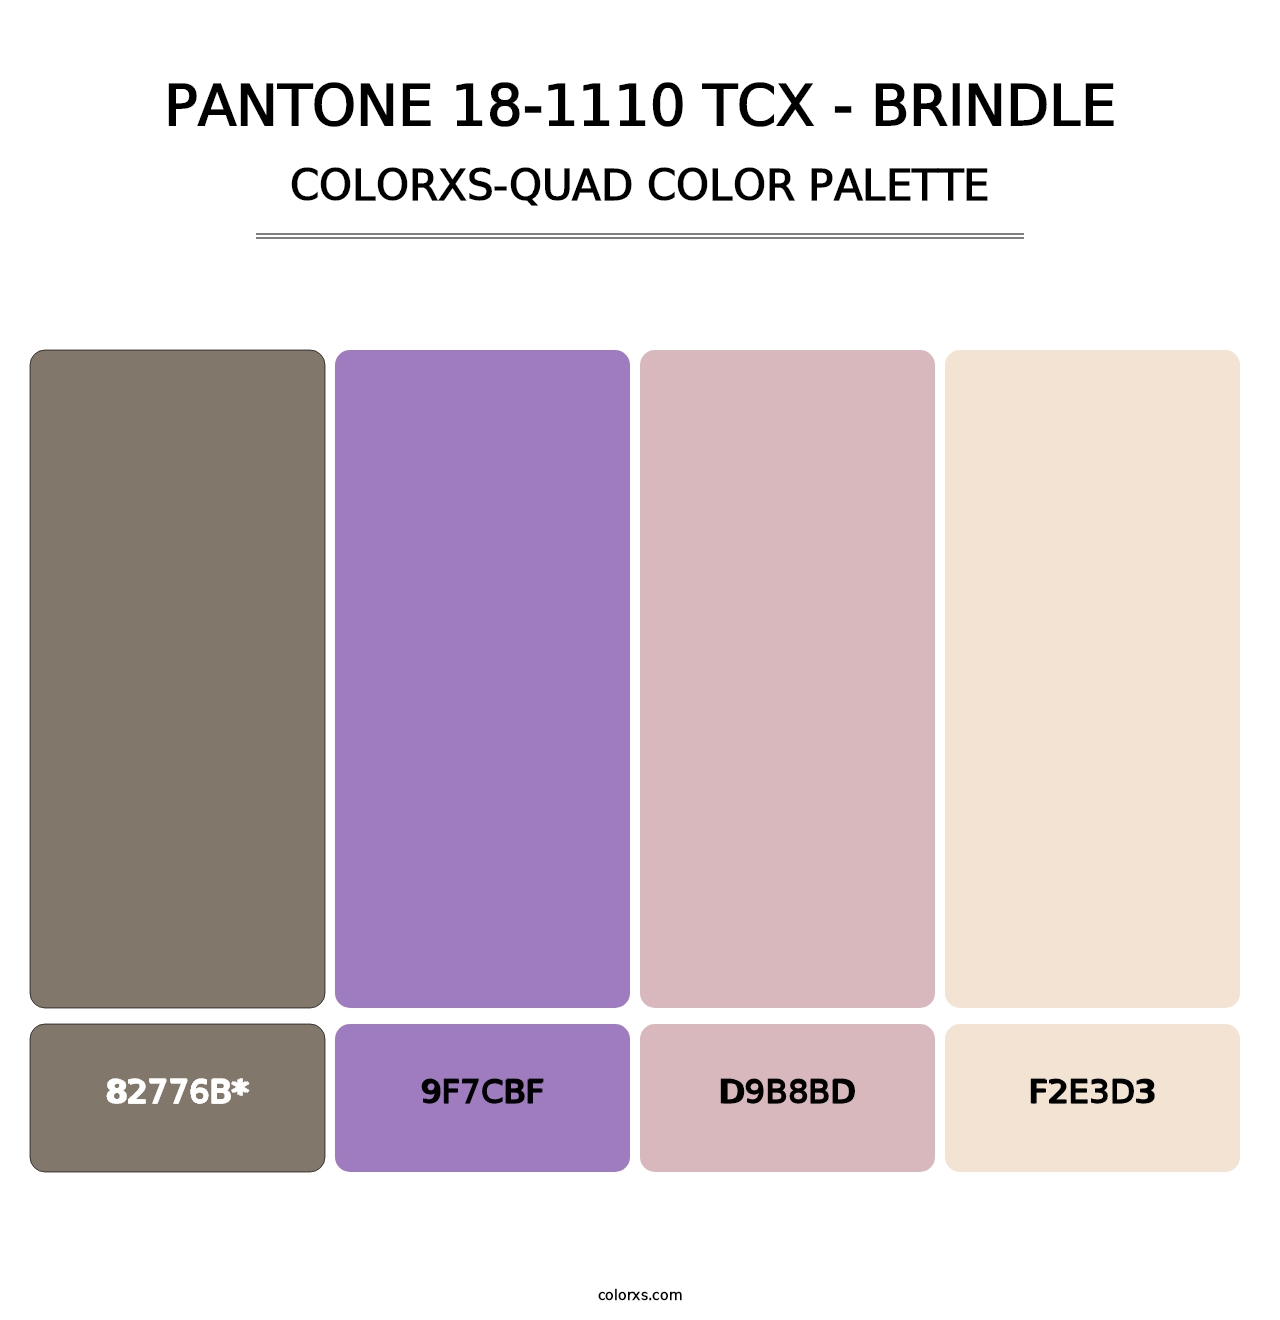 PANTONE 18-1110 TCX - Brindle - Colorxs Quad Palette